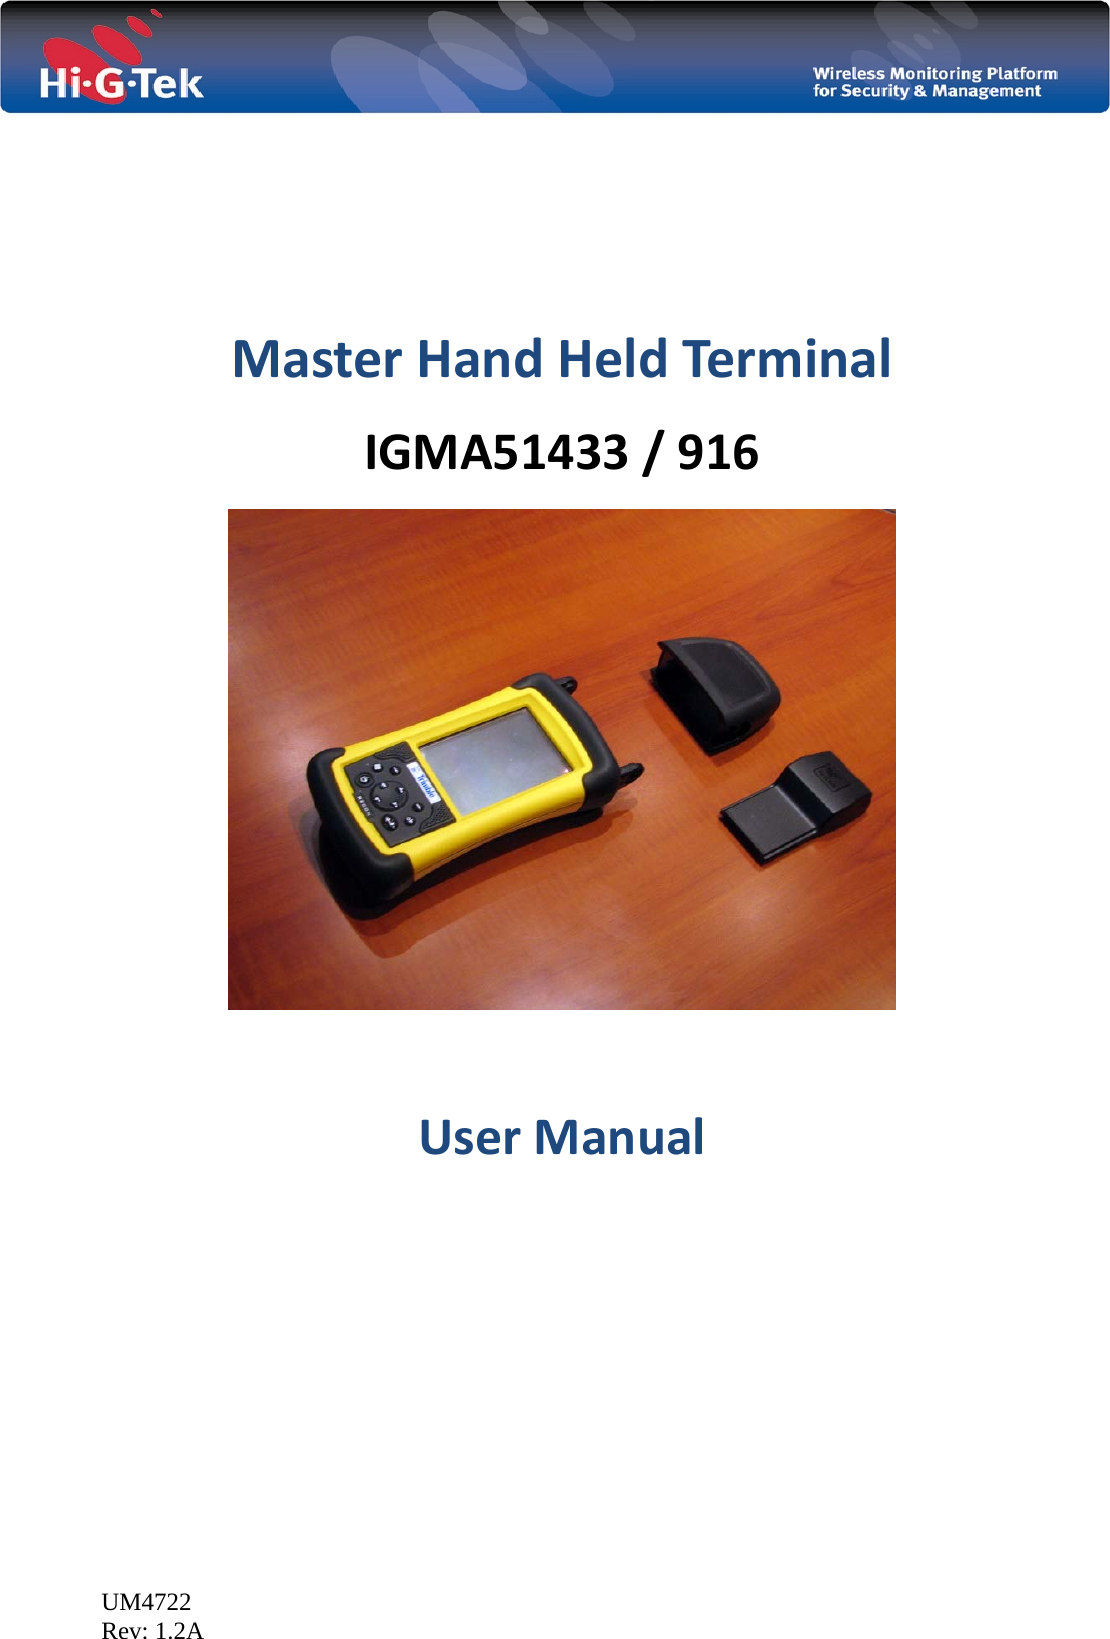  UM4722 Rev: 1.2A   MasterHandHeldTerminalIGMA51433/916  UserManual  